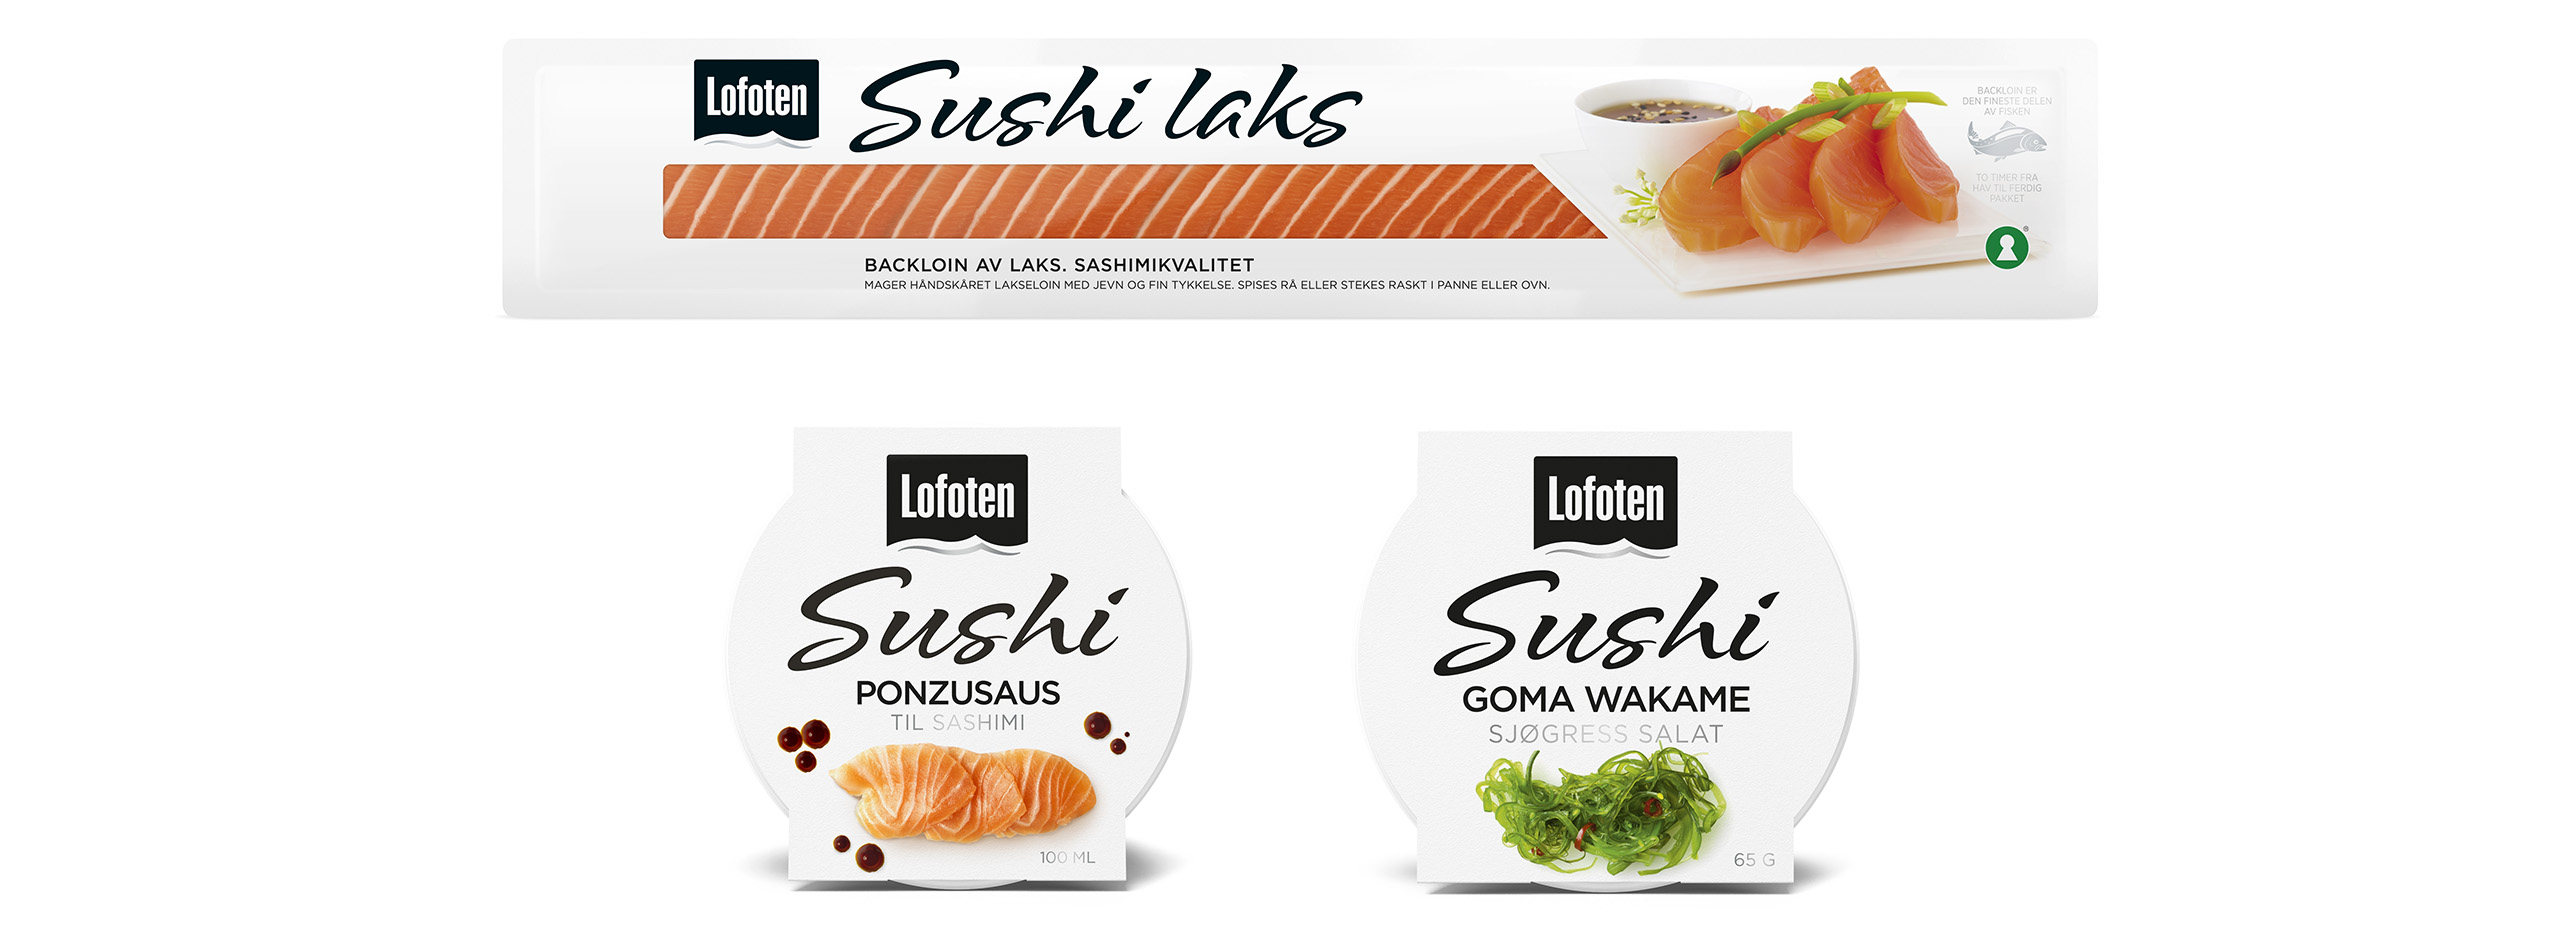 Lofoten Sushi laks, ponzusaus, goma wakame. Emballasje packaging design.